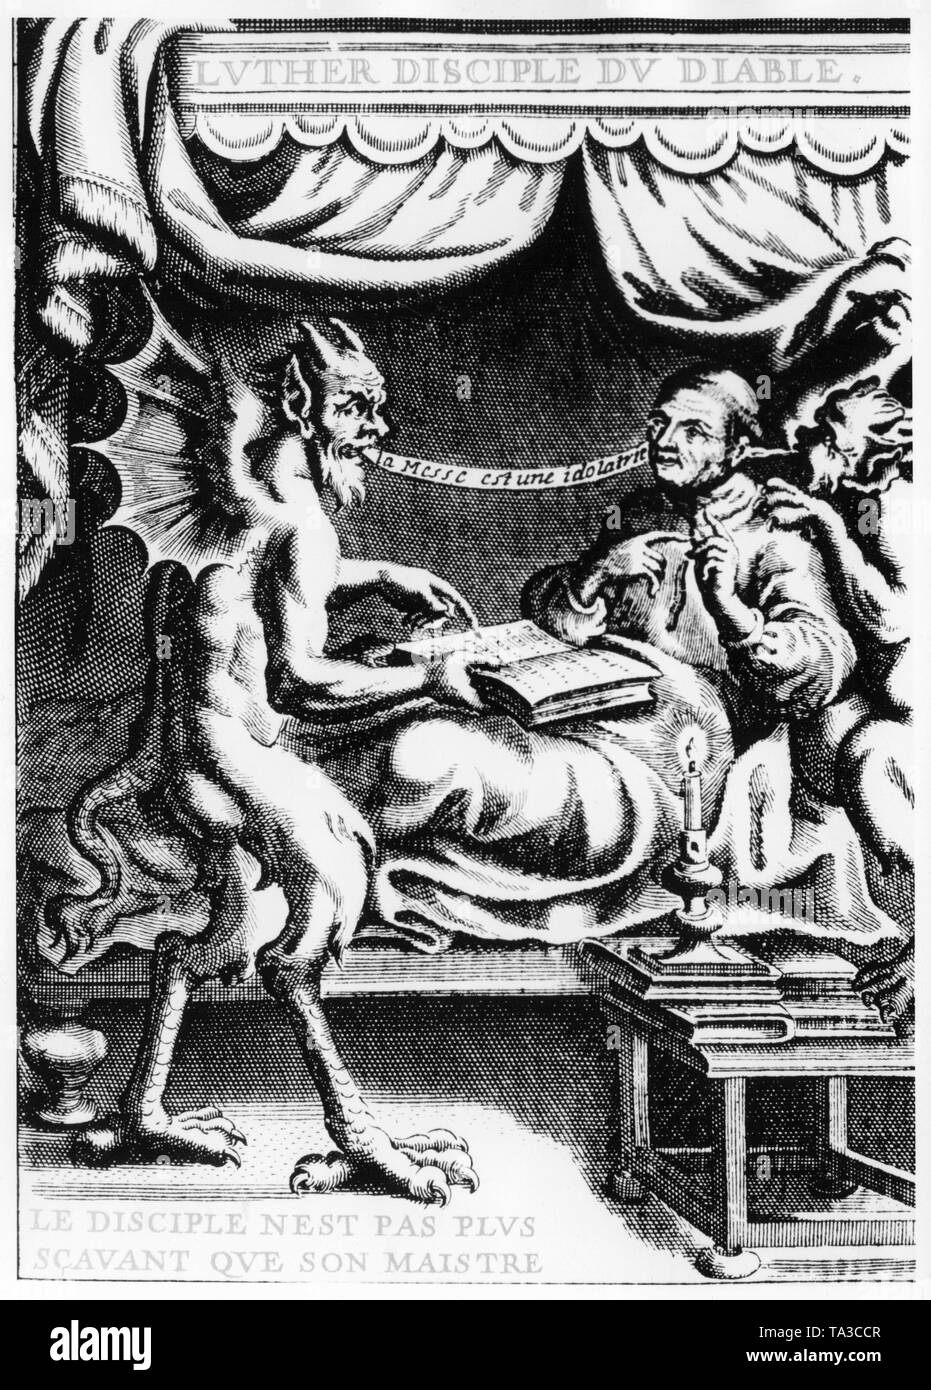 Martin Luther diskutiert die Bedeutung des Missale Opfer mit dem Teufel. Holzschnitt nach einer Legende, aus dem 16. Jahrhundert. Stockfoto